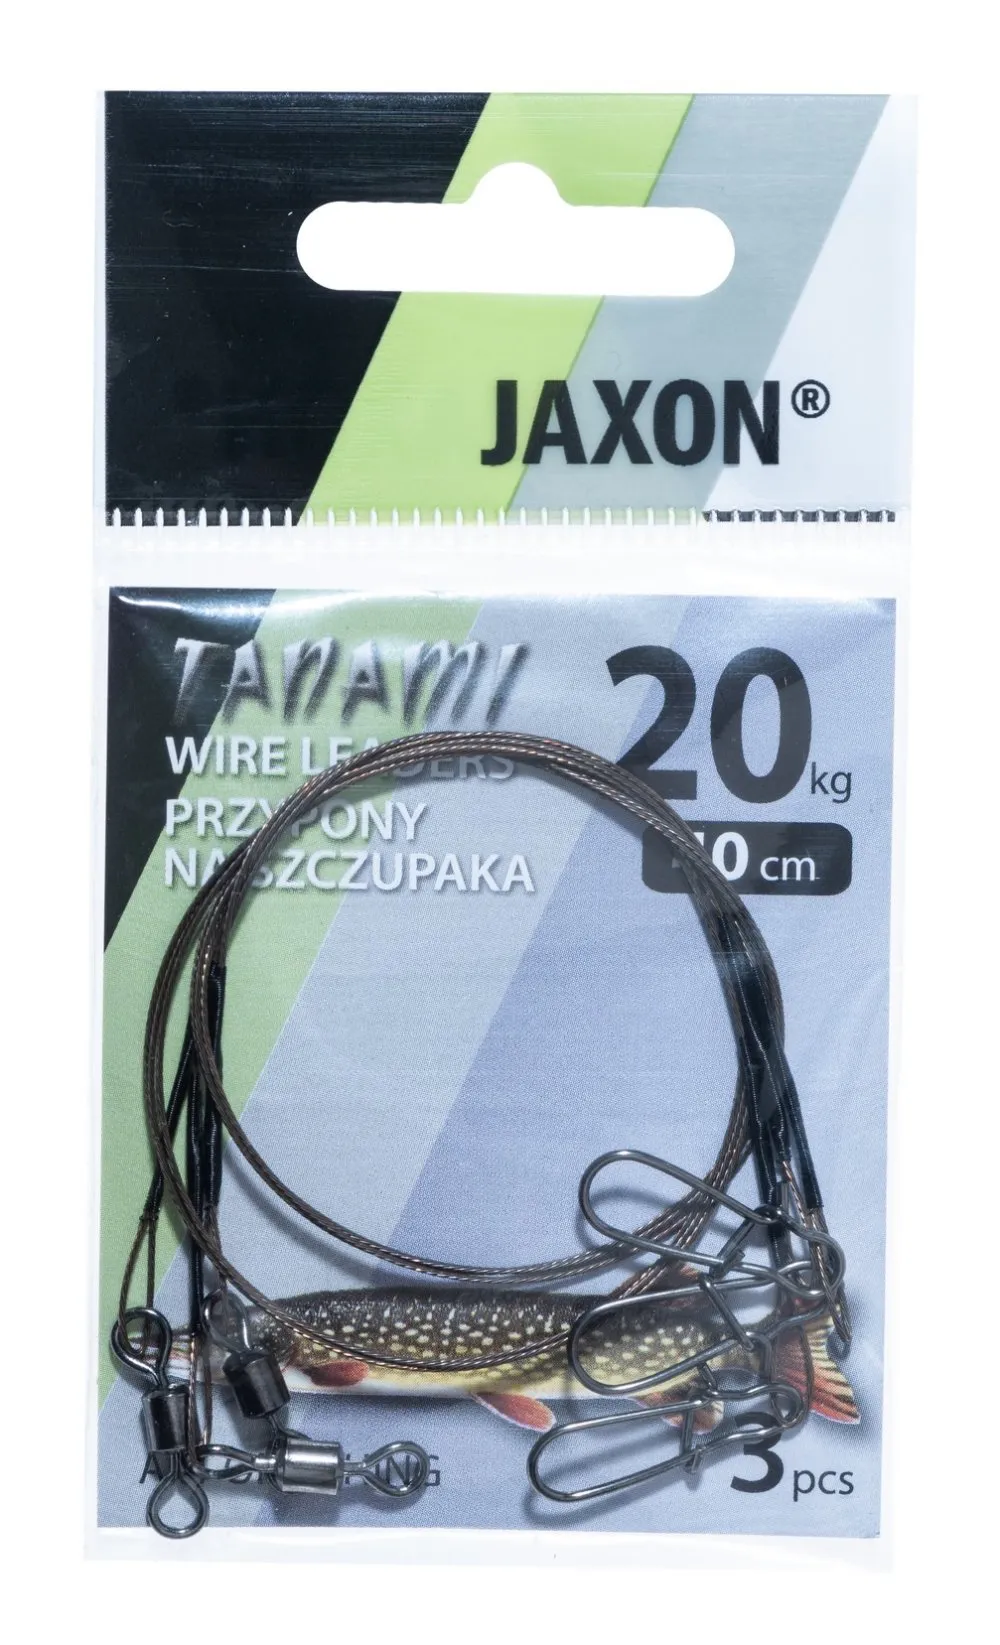 Jaxon tanami big game wire leaders 20kg 50cm E